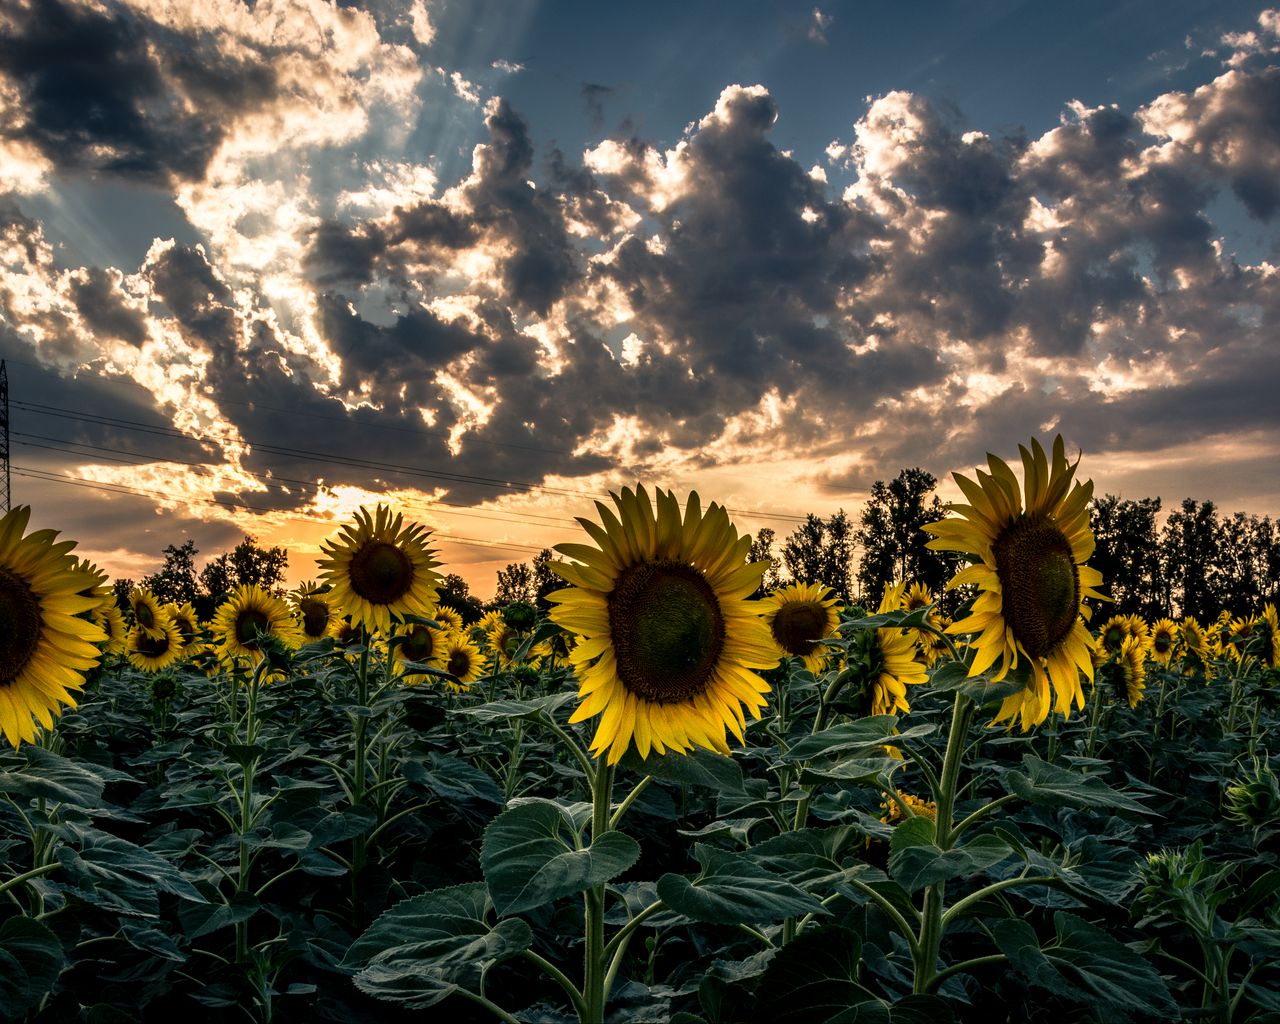 Download wallpaper 1280x1024 sunflower, field, flower, sunset standard 5:4  hd background